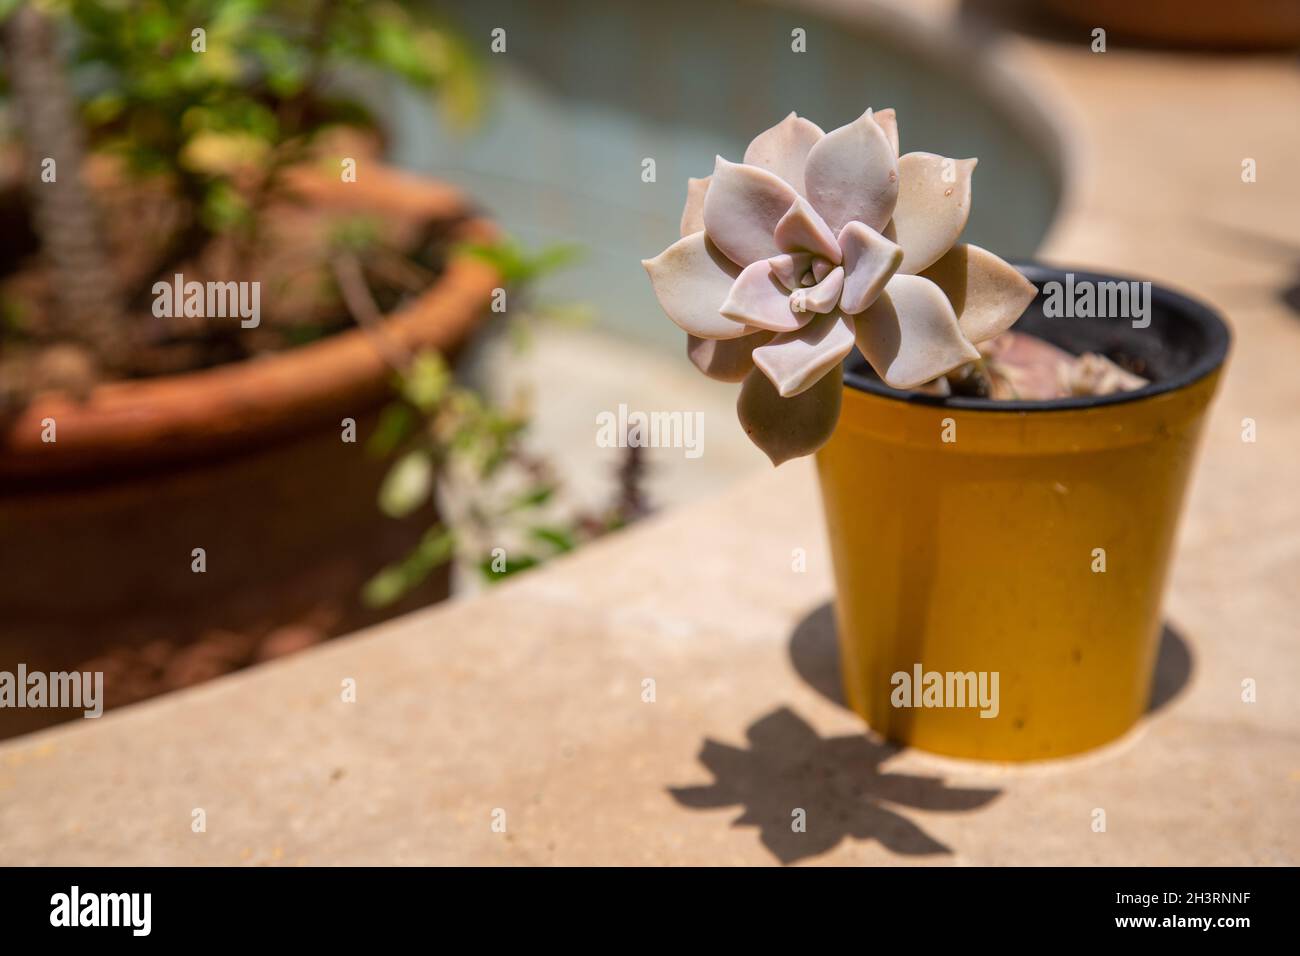 È una pianta della famiglia dei cactus succulenti. Significa letteralmente "con essenza e acqua". Ci sono molte varietà di piante succulente. Foto Stock